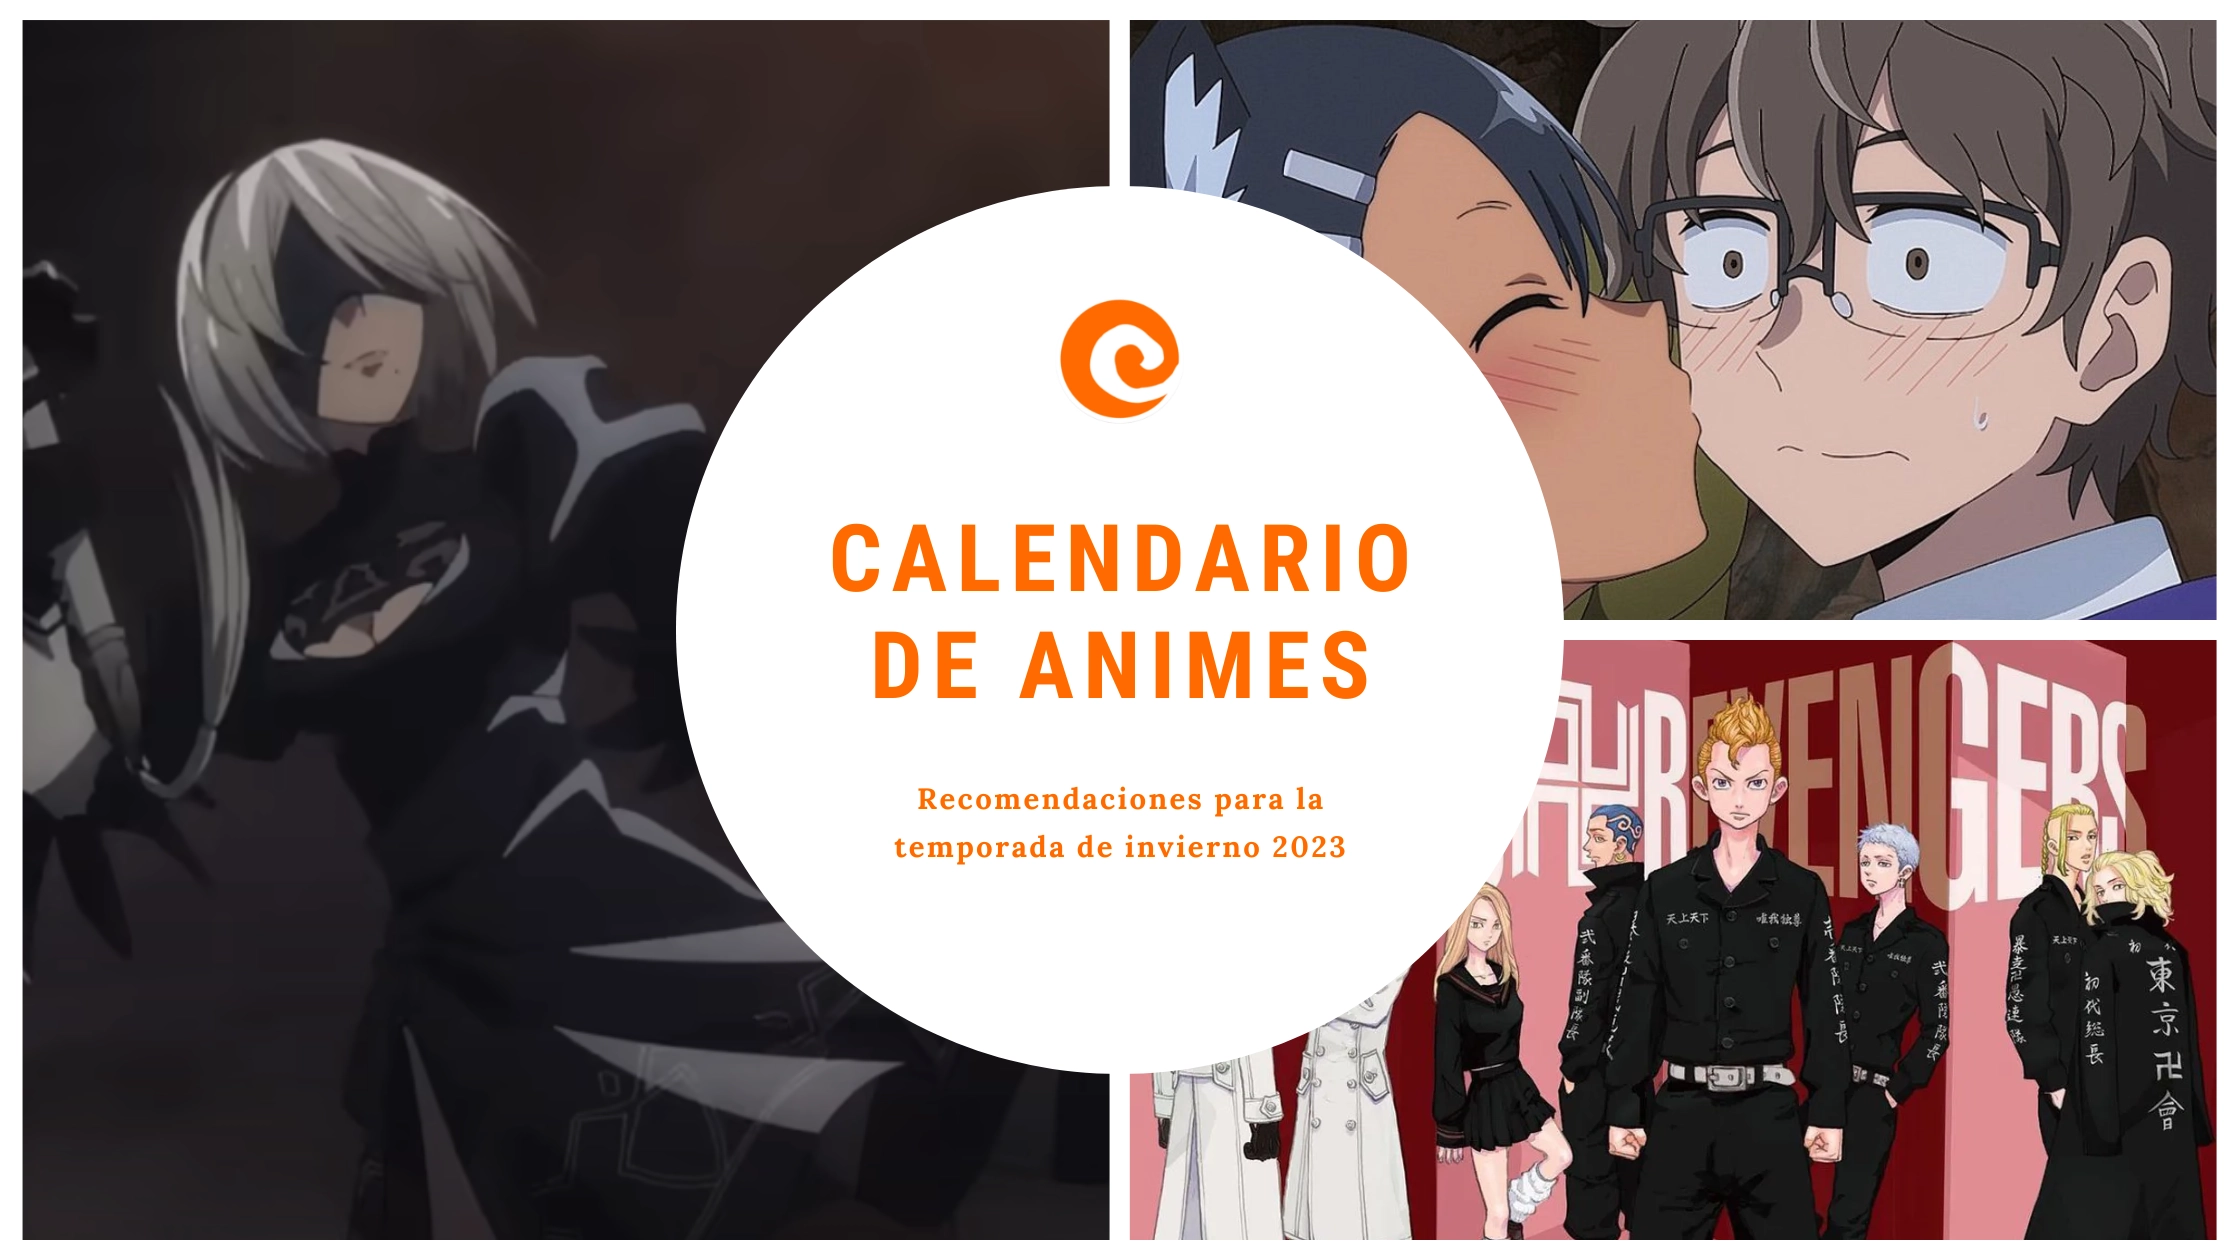 Calendario de estrenos: Nuestros animes recomendados de invierno 2023